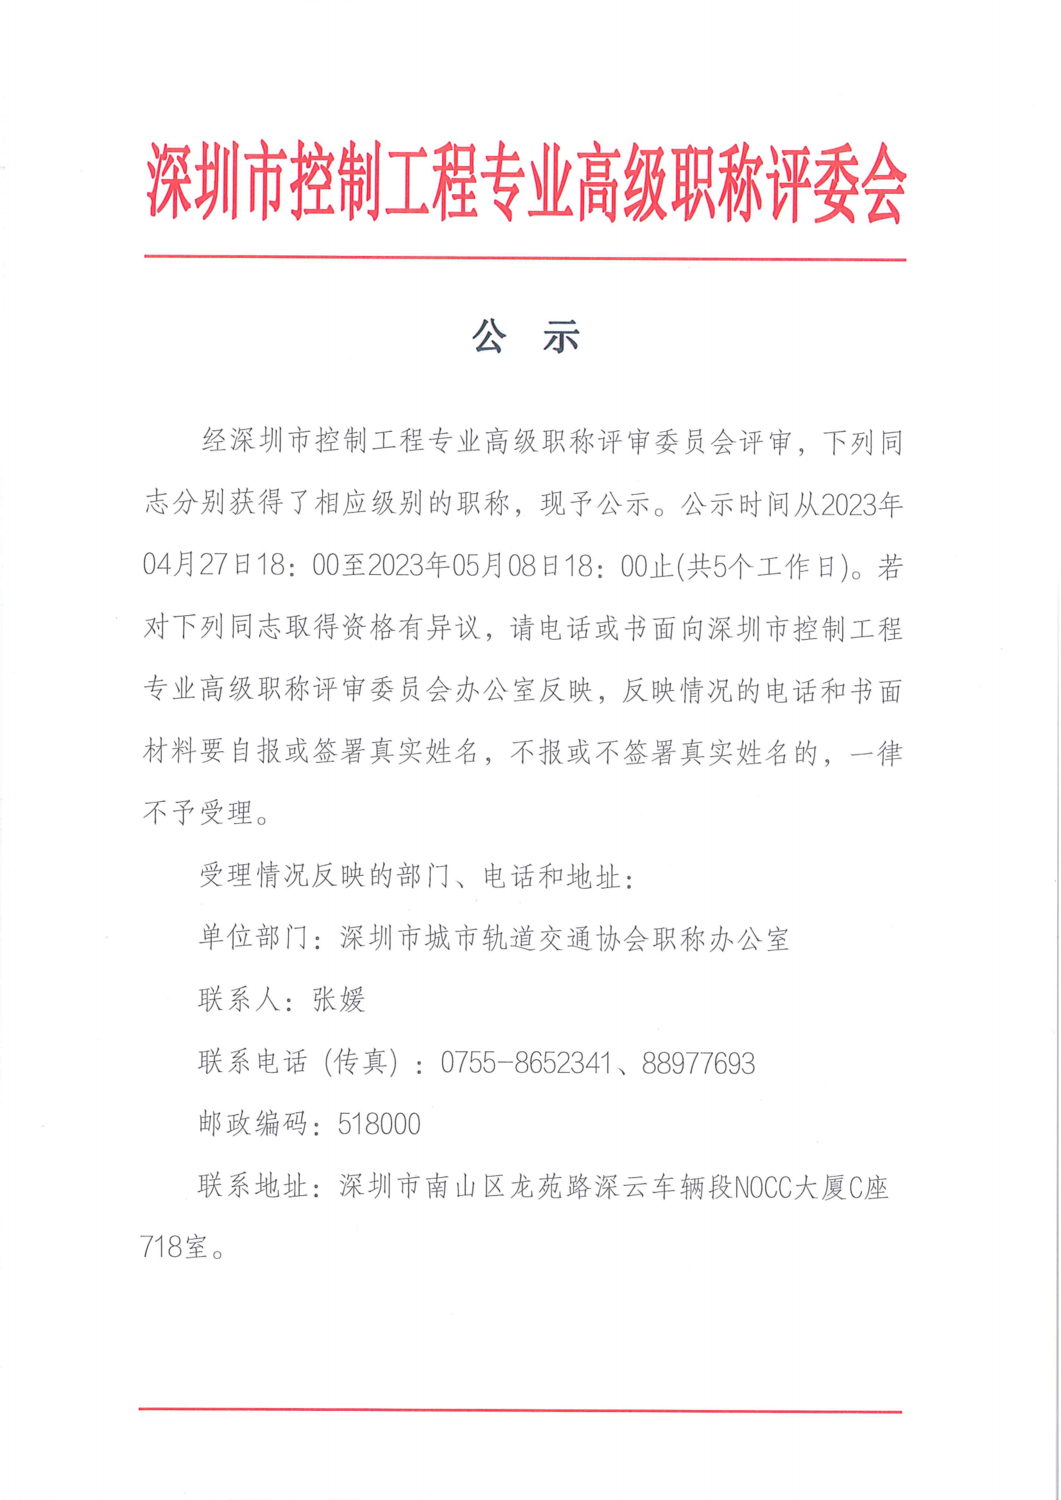 深圳市控制工程专业高级职称评委会评后公示_00.png